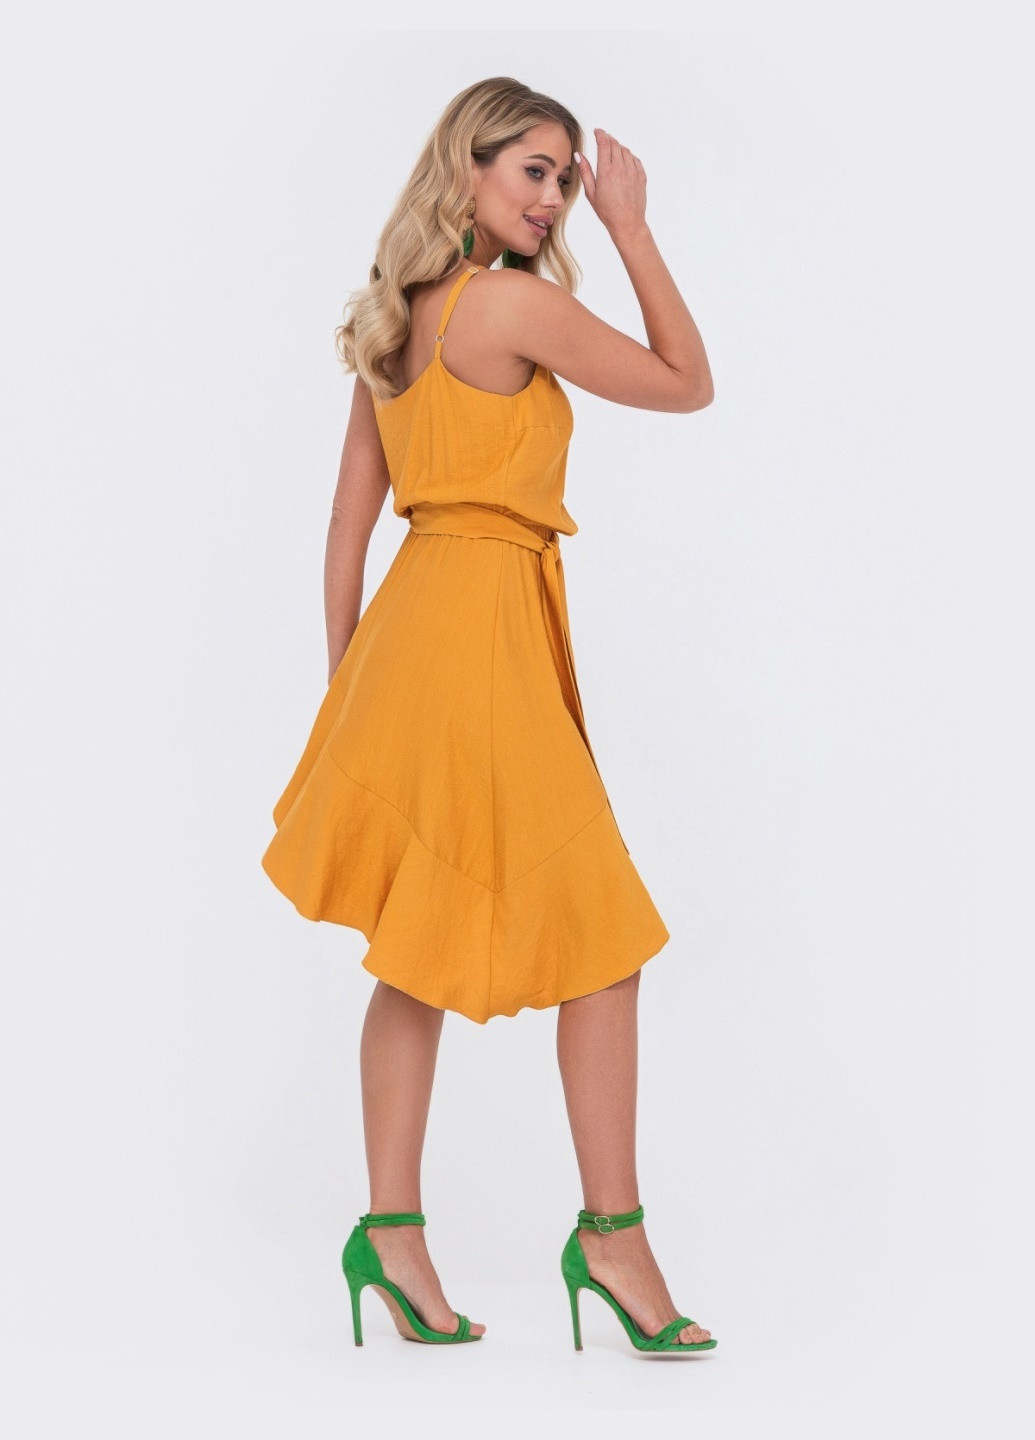 Желтое платье горчичного цвета с асимметричной юбкой Dressa